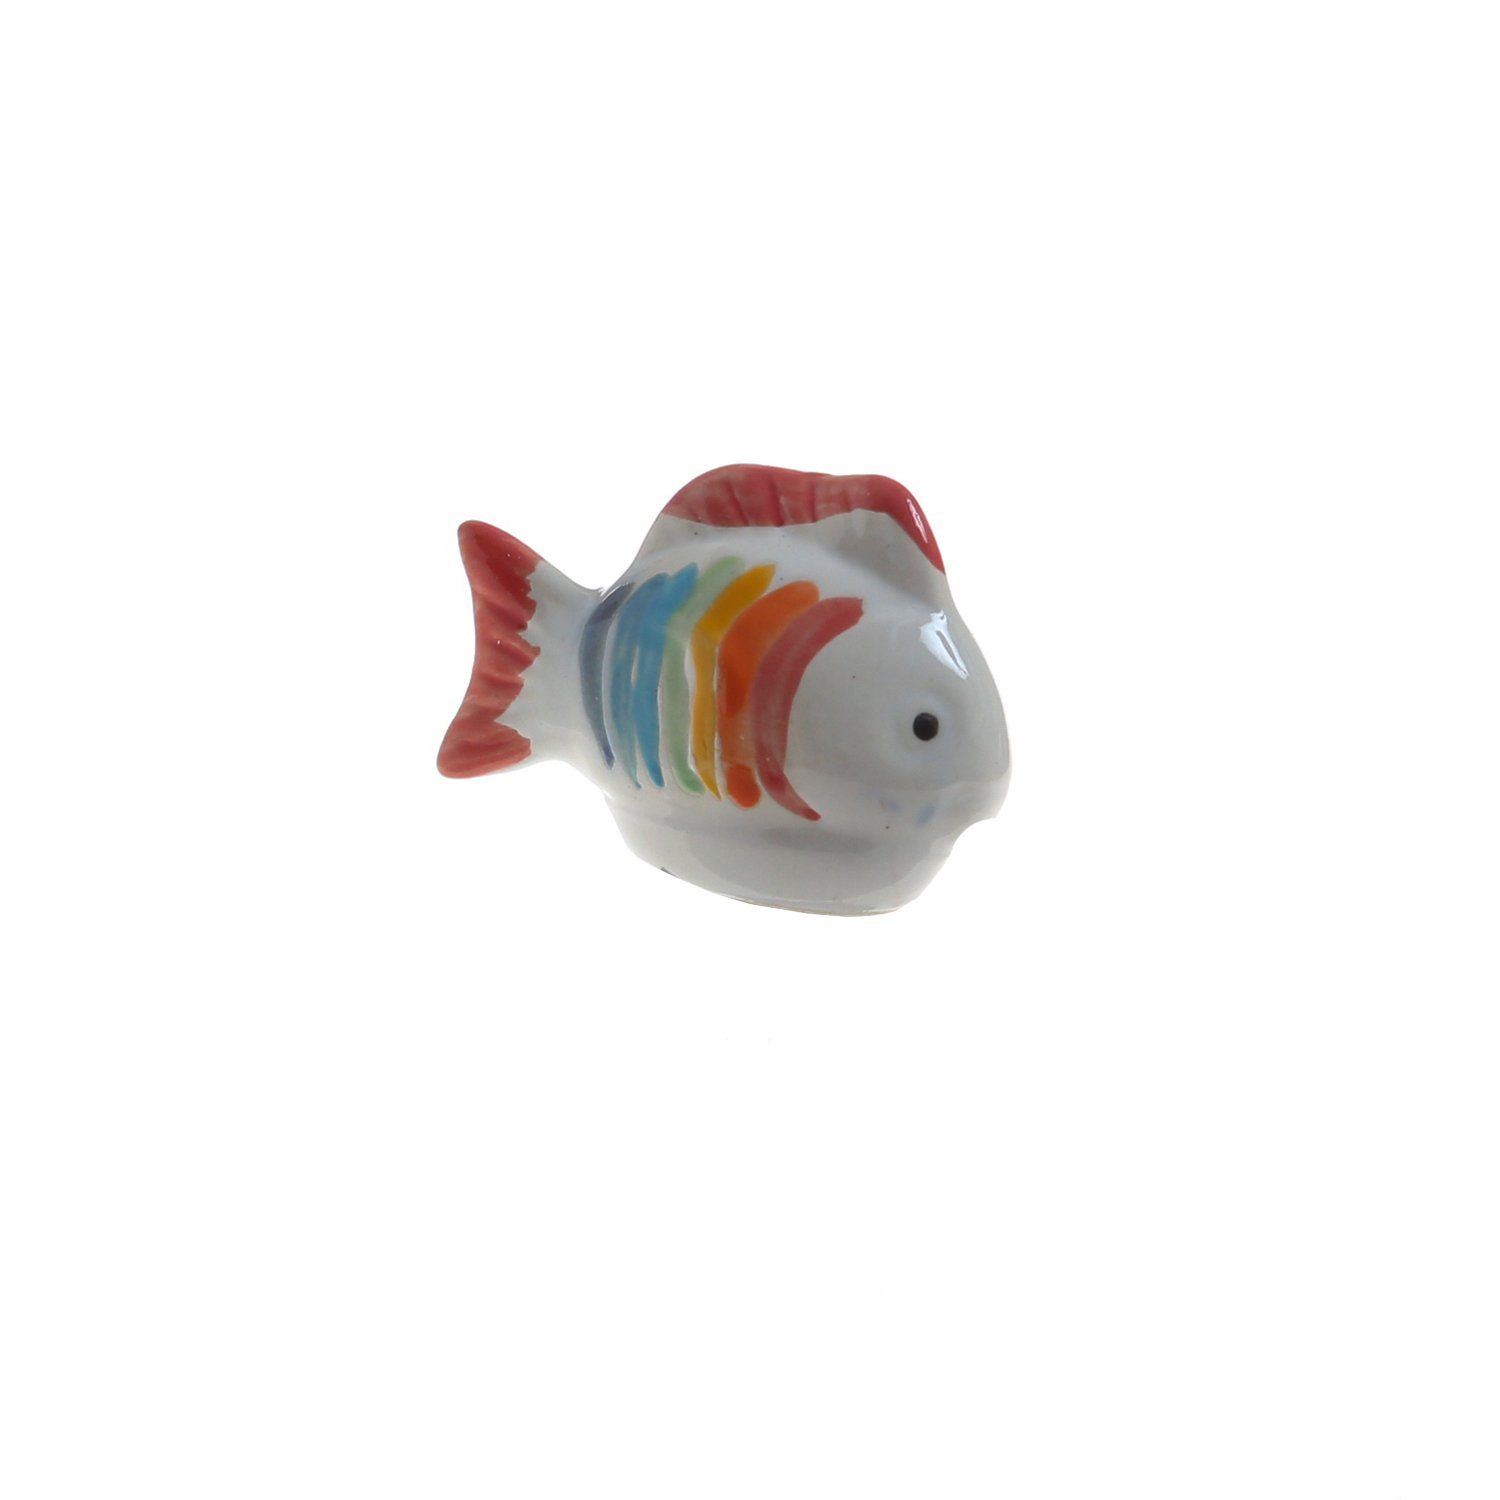 Fisch St) Regenbogen bunt 6cm MARELIDA Porzellan Teichdeko Tierfigur Dekofigur schwimmend L: (1